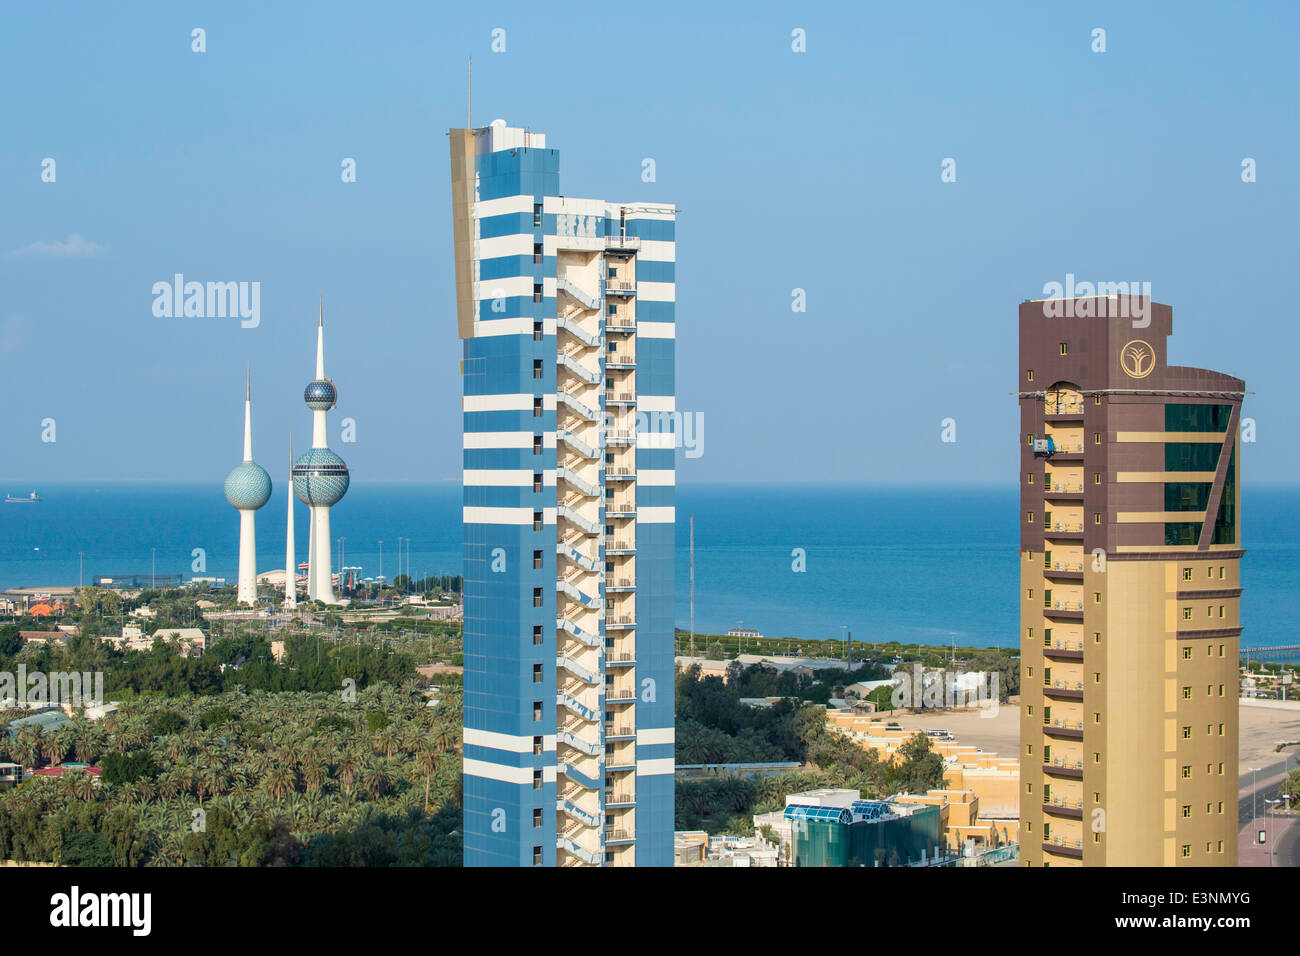 Kuwait City, edifici residenziali e il Kuwait Towers, Golfo Persico, Arabia Foto Stock